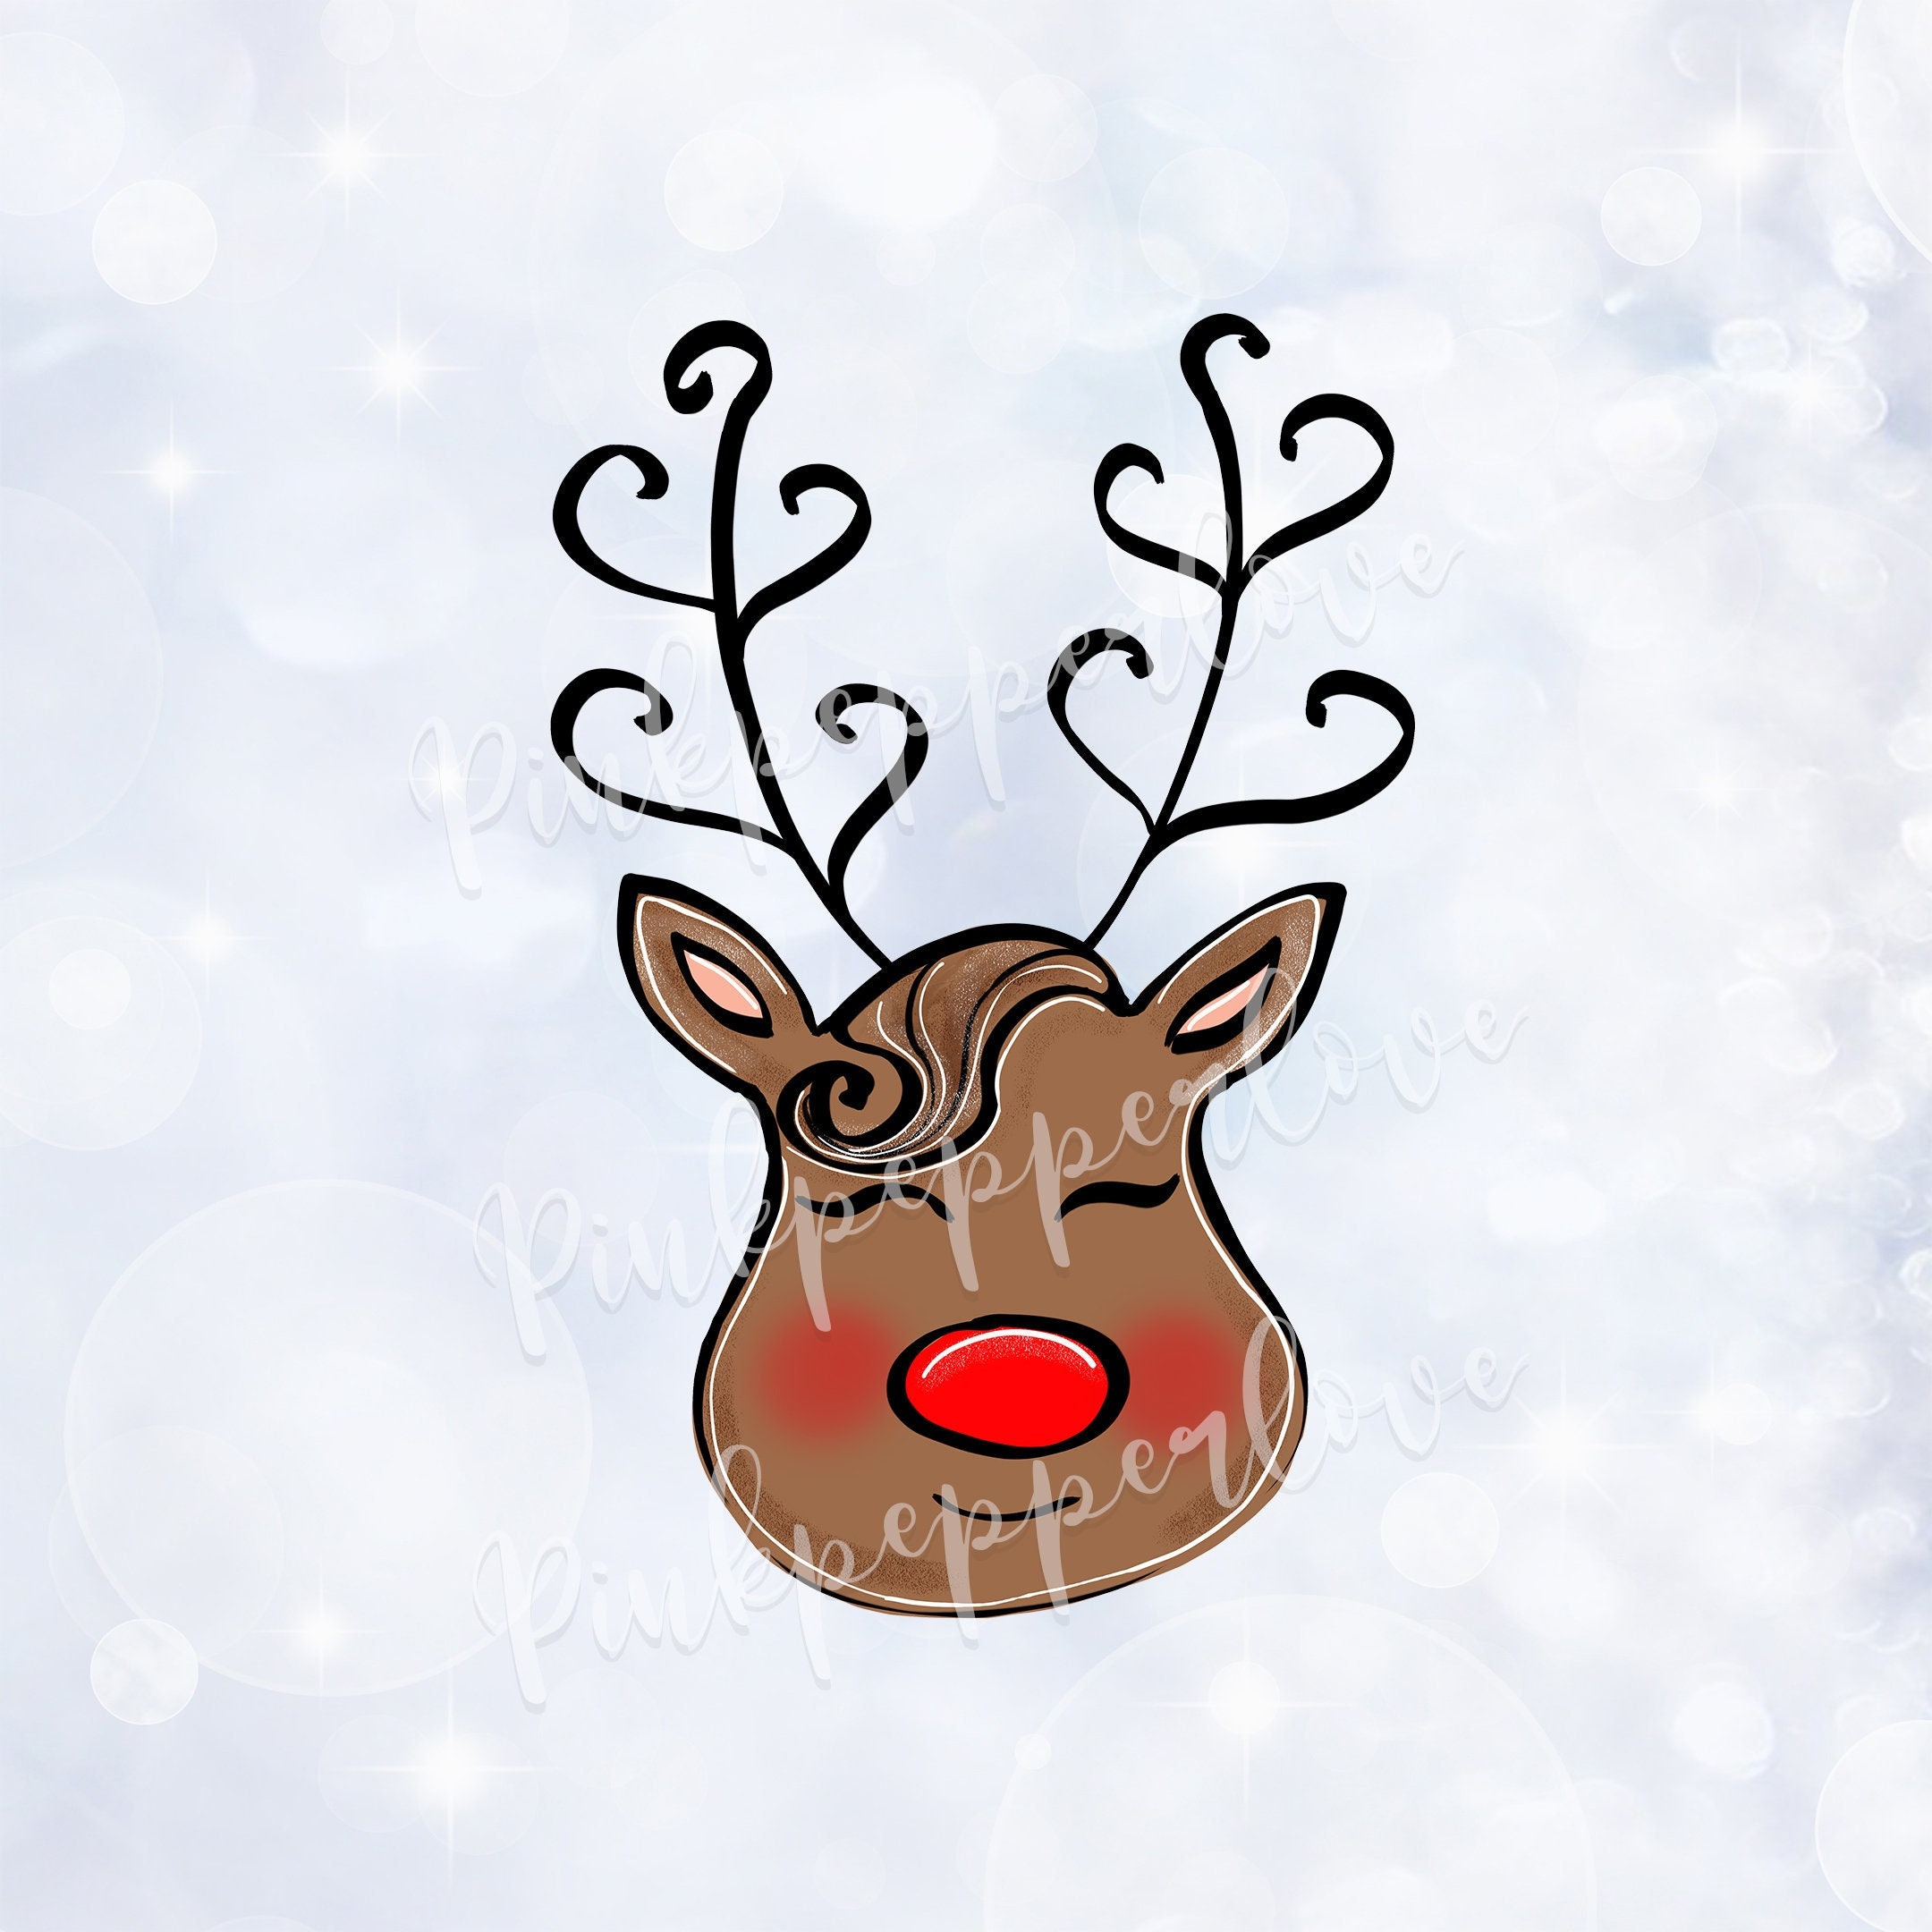 Sketch of a reindeer wearing a santa hat on Craiyon